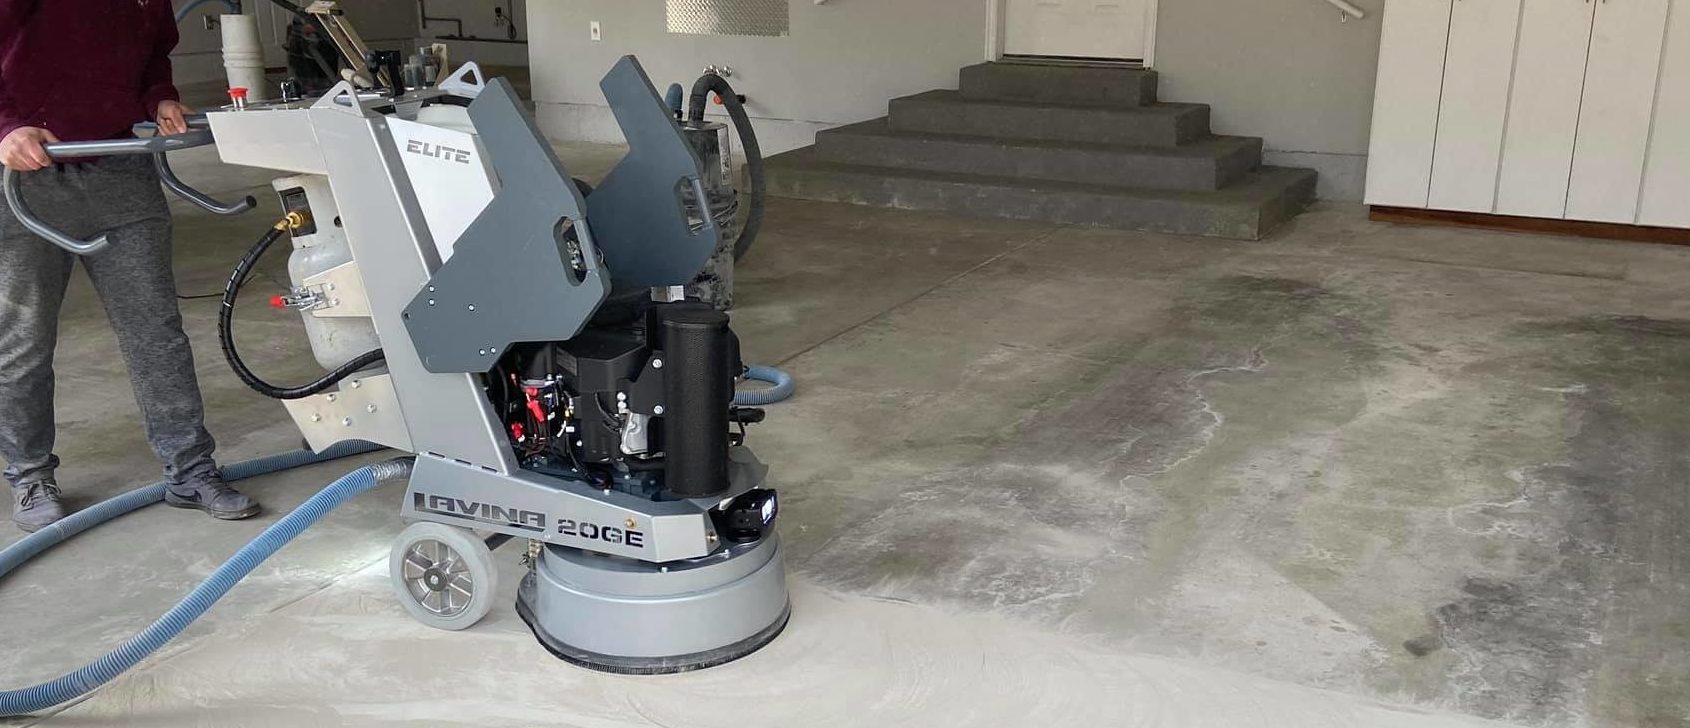 Grinding garage floors with L20GE floor grinder